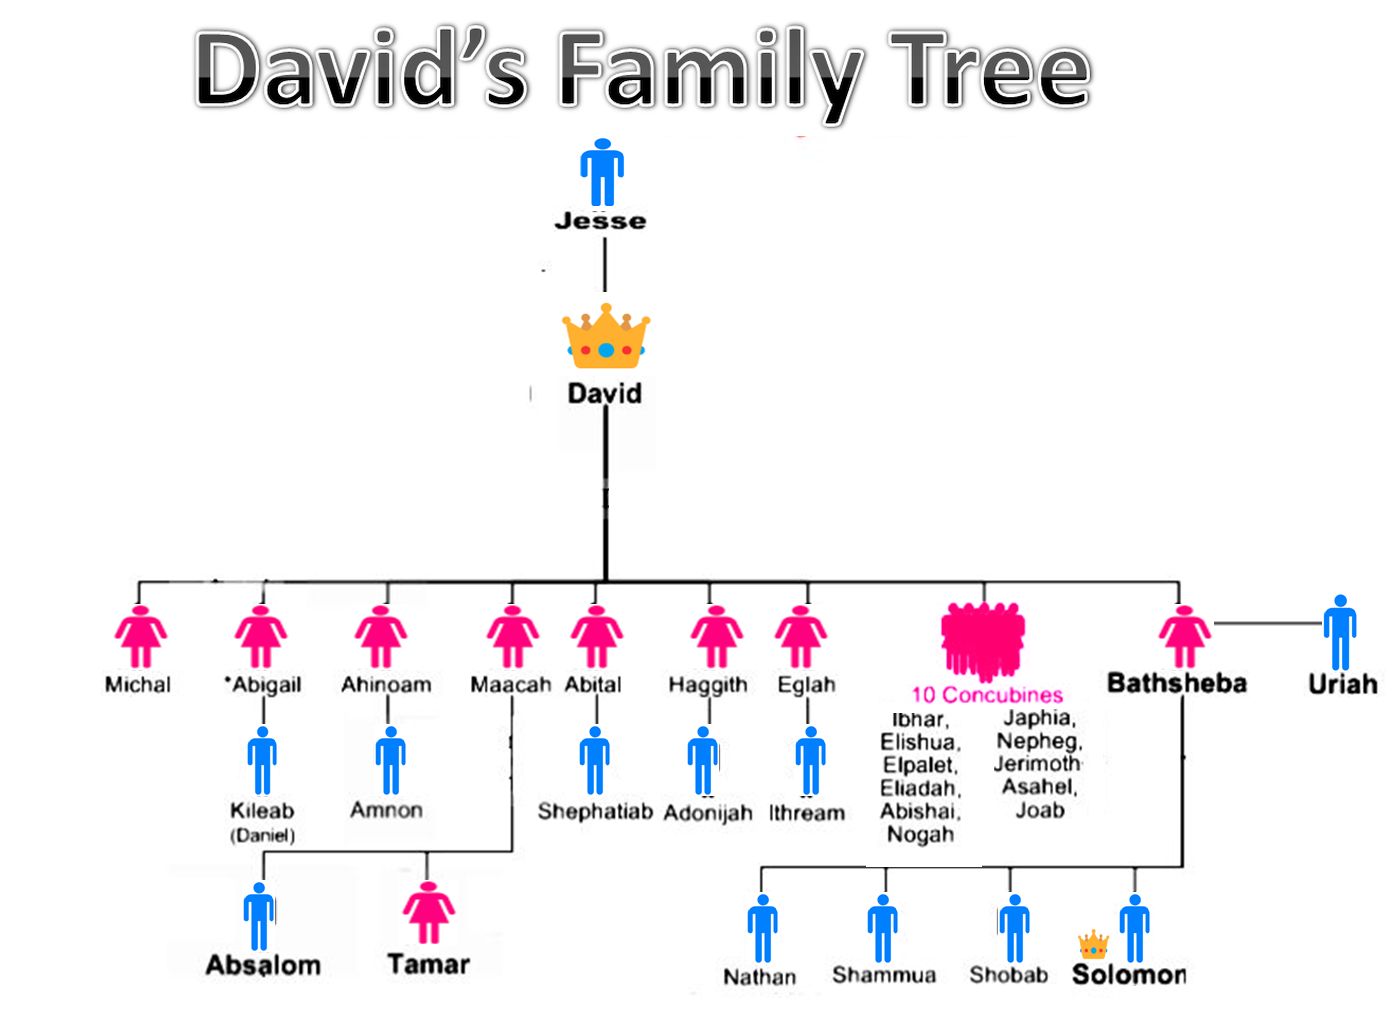 बायबलमध्ये राजा डेव्हिडच्या बायका आणि विवाह